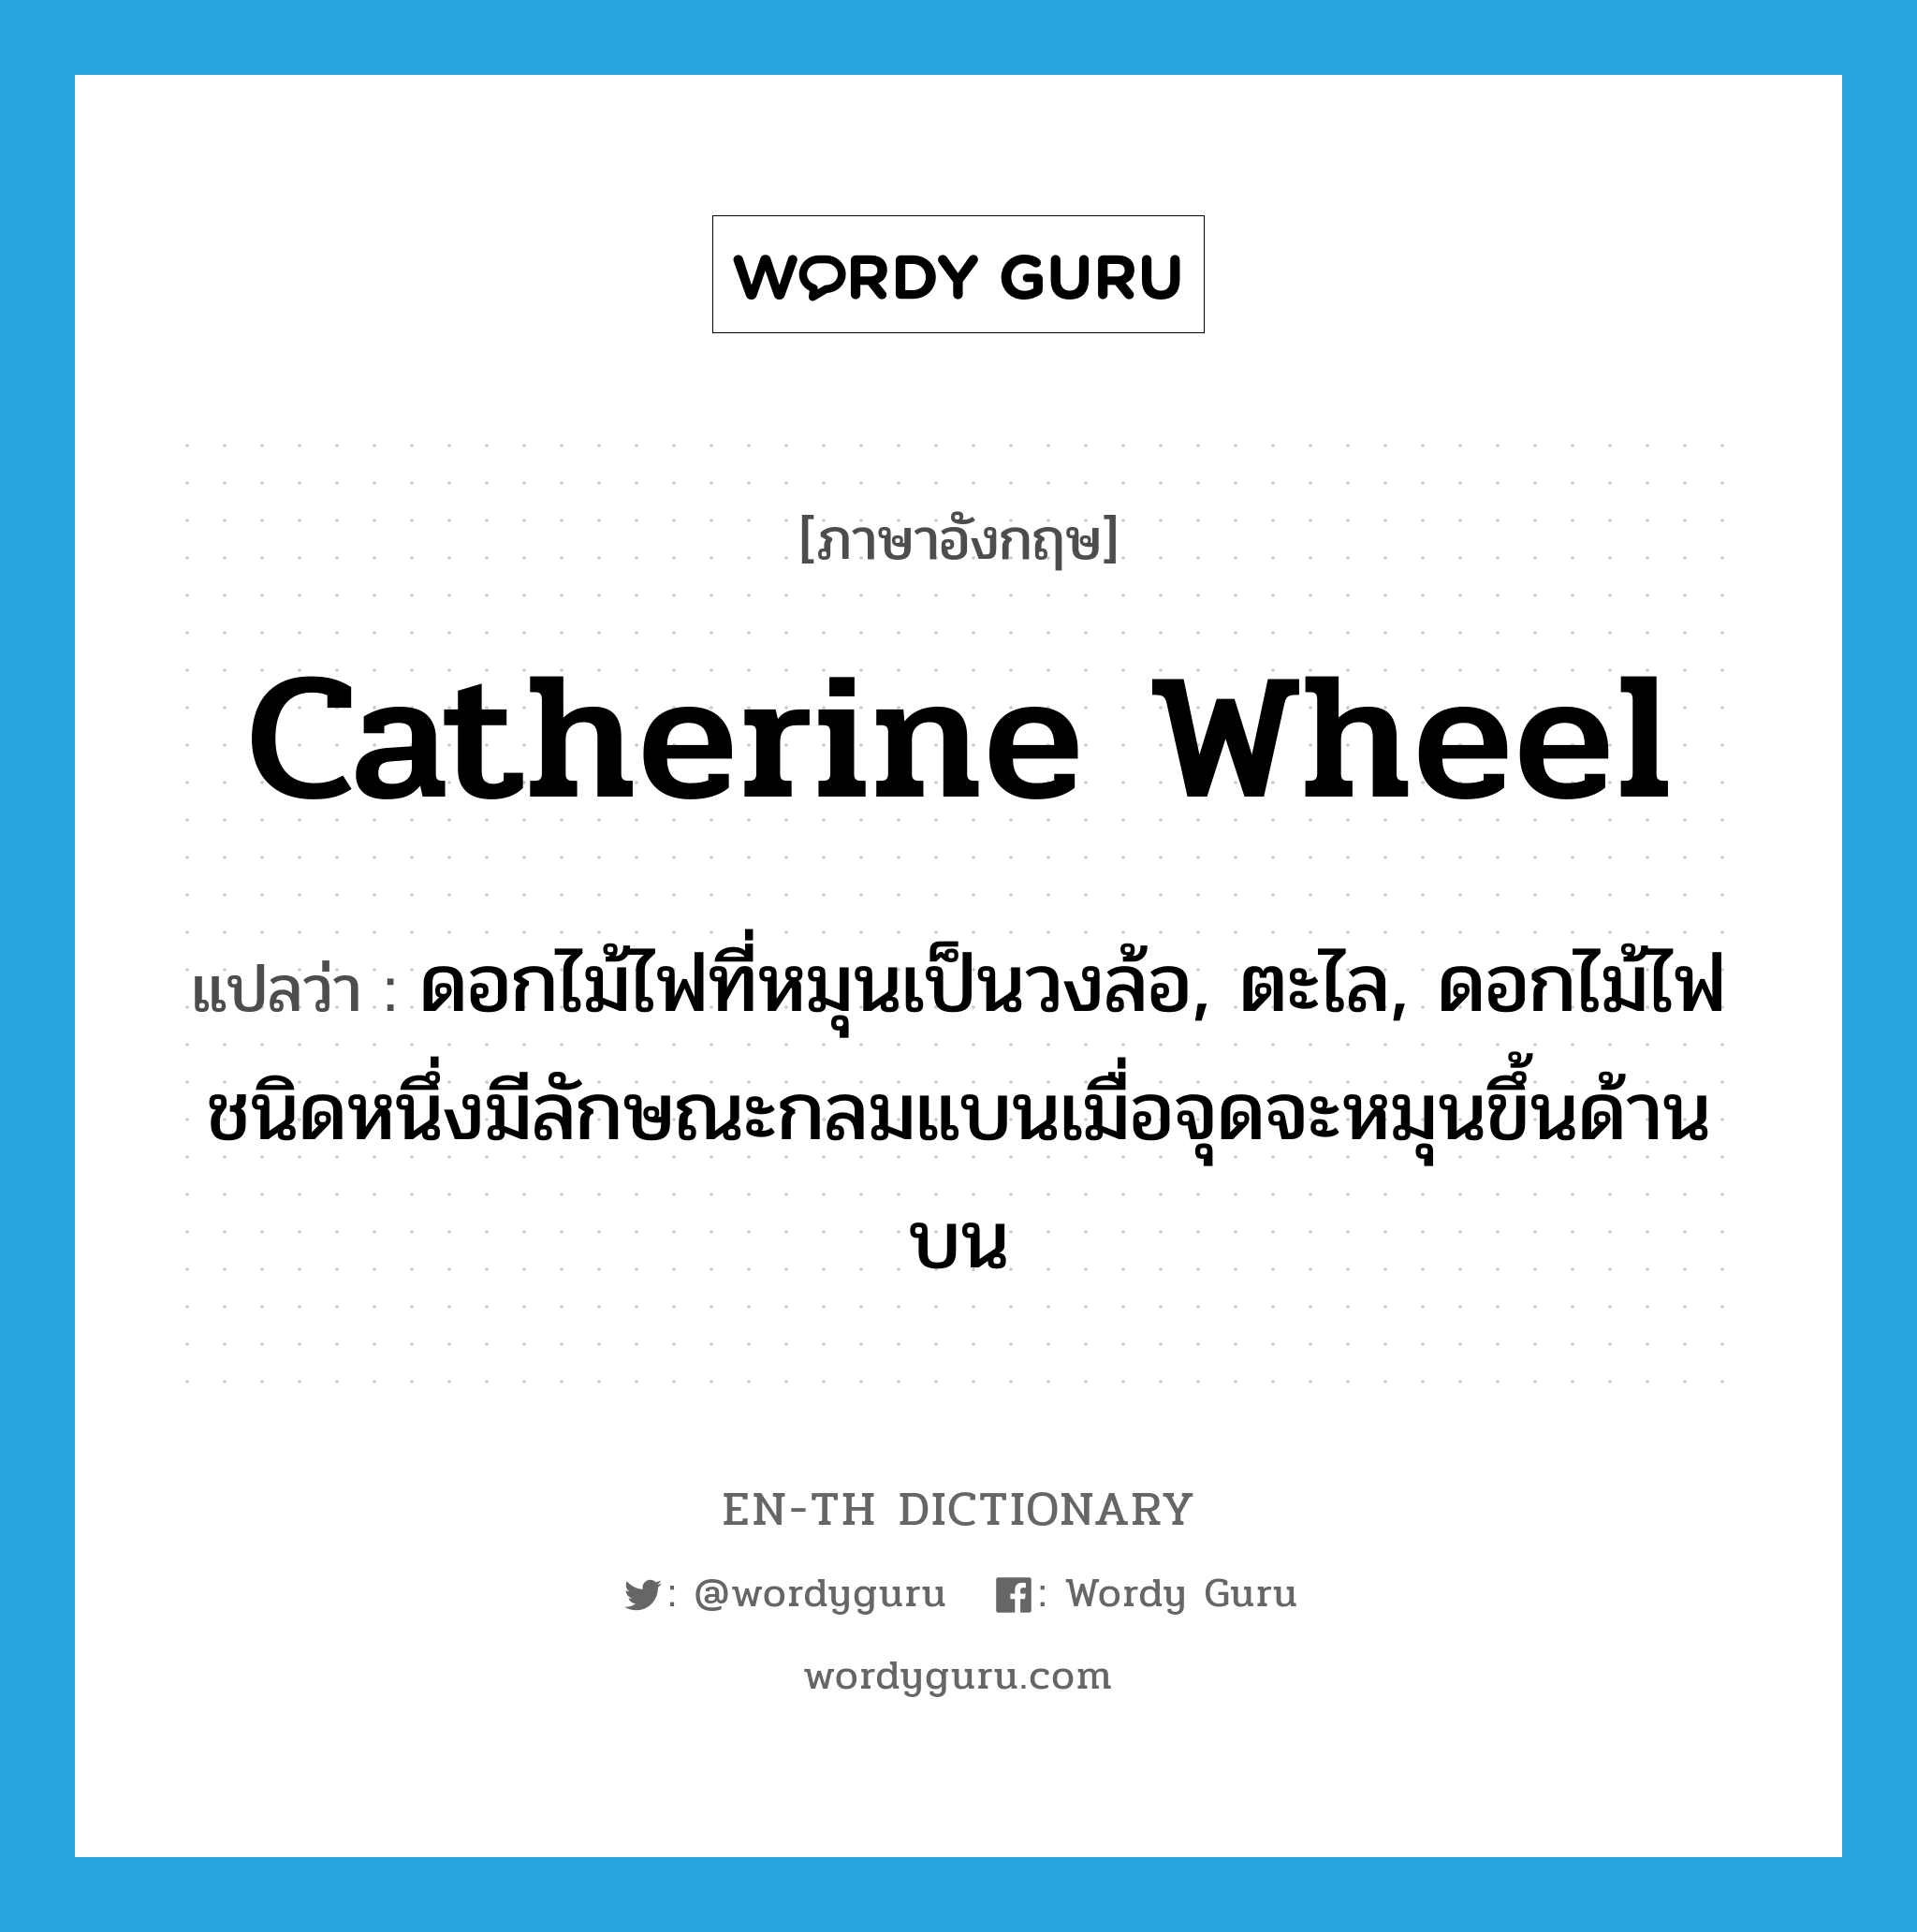 catherine wheel แปลว่า?, คำศัพท์ภาษาอังกฤษ catherine wheel แปลว่า ดอกไม้ไฟที่หมุนเป็นวงล้อ, ตะไล, ดอกไม้ไฟชนิดหนึ่งมีลักษณะกลมแบนเมื่อจุดจะหมุนขึ้นด้านบน ประเภท N หมวด N